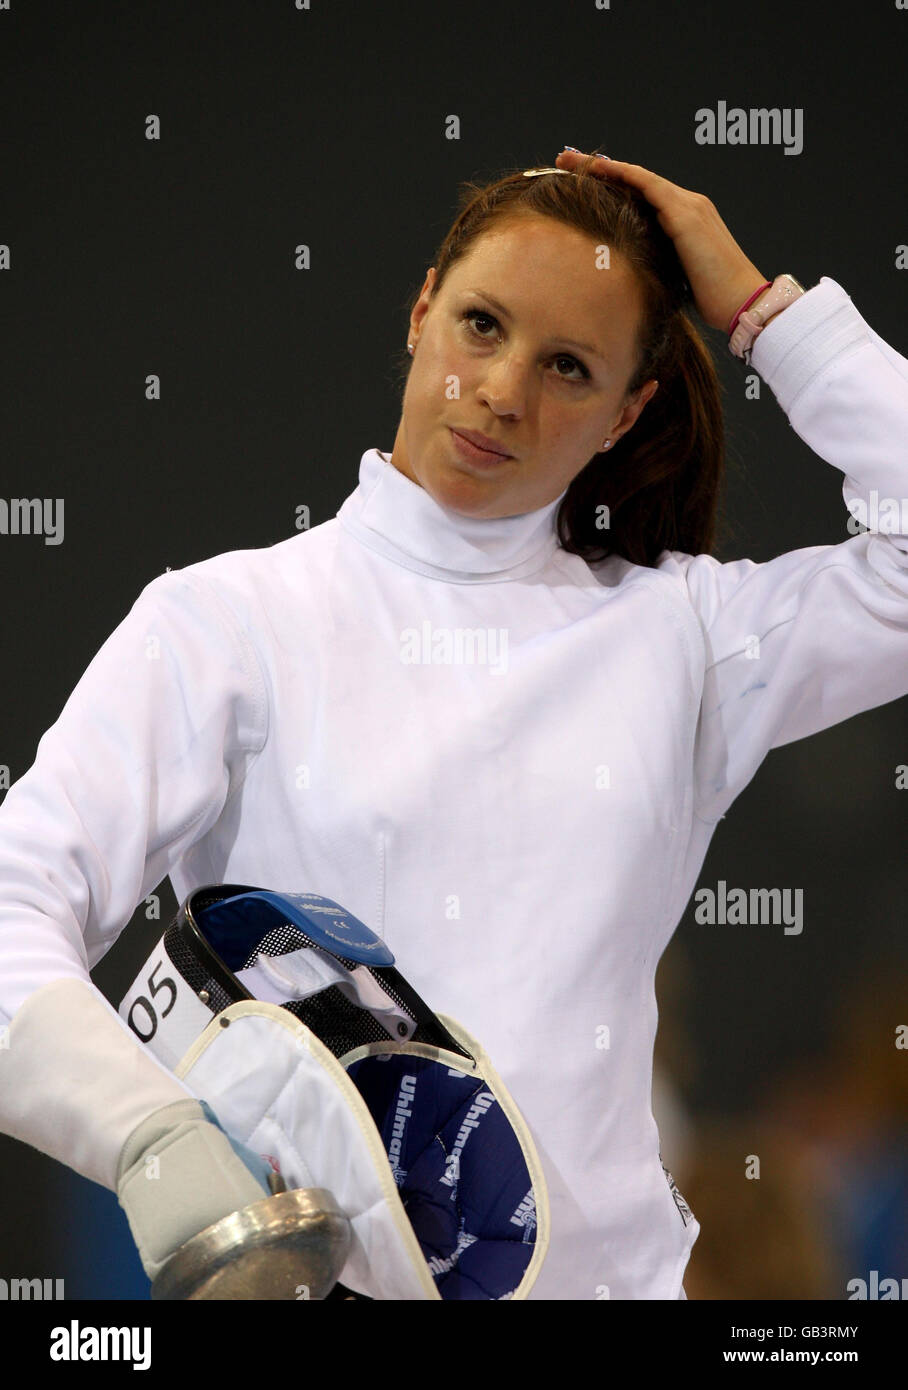 La Heather della Gran Bretagna cadde nella disciplina di scherma del Pentathlon moderno delle Donne alle Olimpiadi di Pechino del 2008, in Cina. Foto Stock